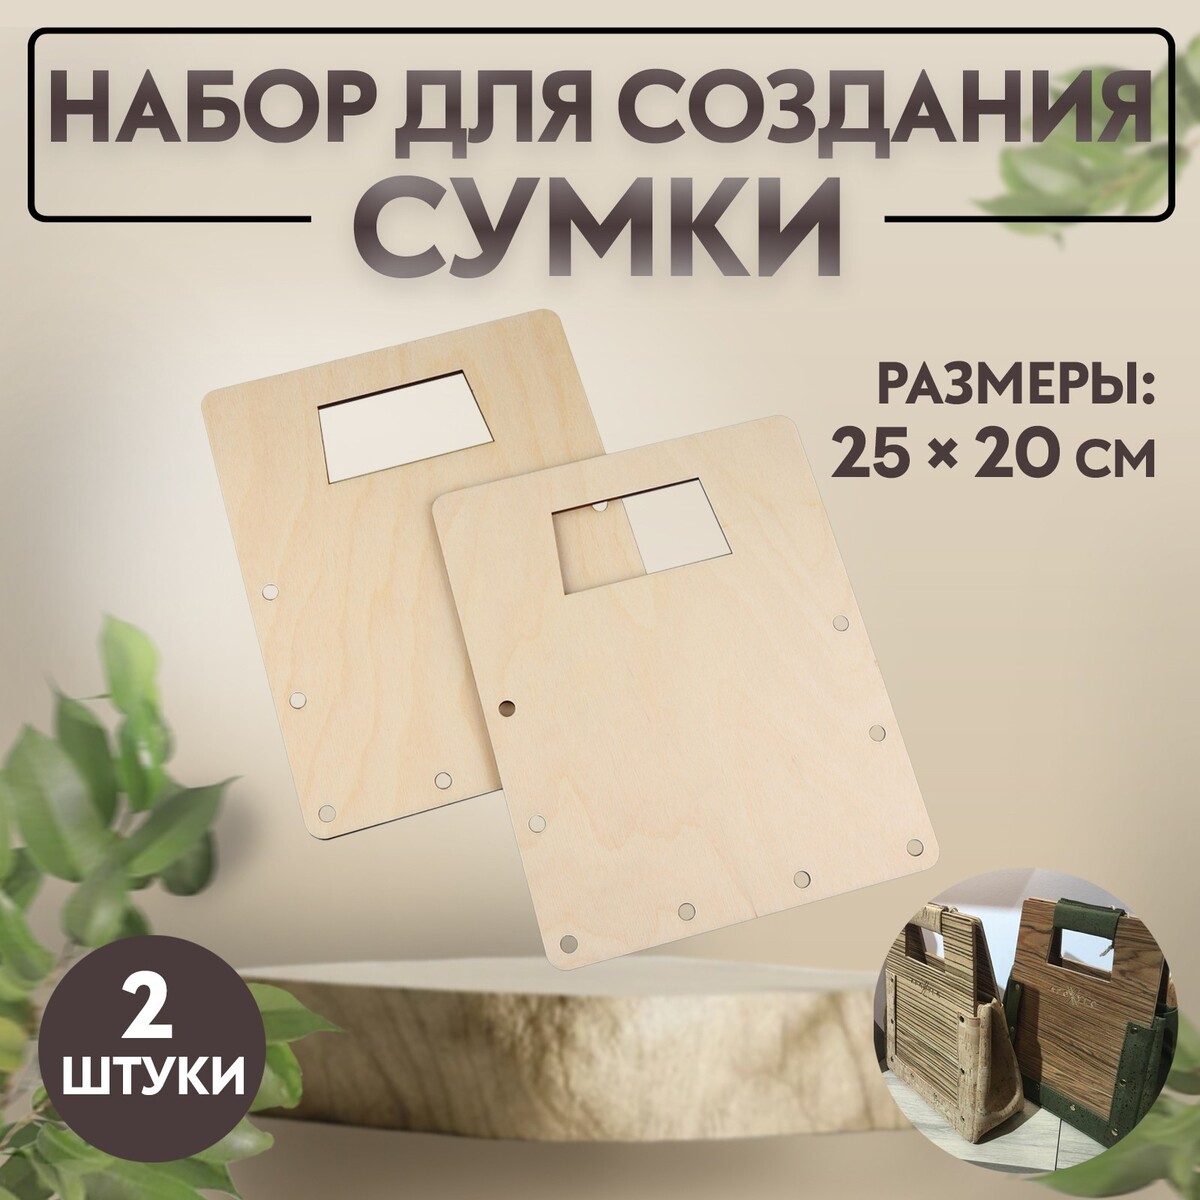 Набор для создания сумки, из дерева, 25 × 20 см набор двойных фиксаторов для шнура d 4 мм 2 × 2 2 см 50 шт прозрачный